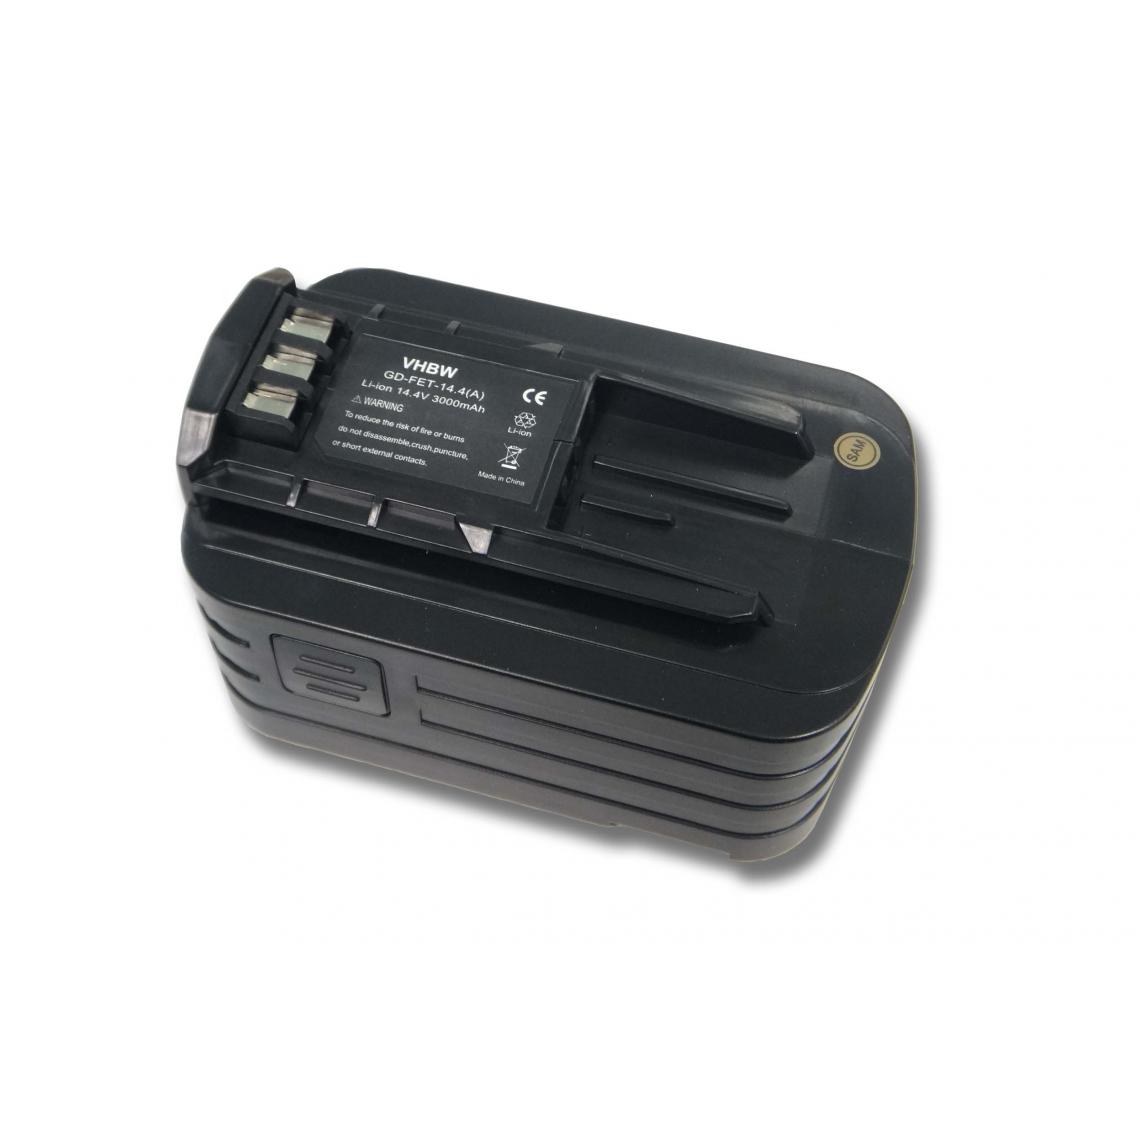 Vhbw - Batterie Ni-MH vhbw 3000mAh (14.4V) pour outils Festo Festool T15 Cordless Drill/Driver, T15+3, T18 Cordless Drill/Driver. Remplace: 494832 et autres - Accessoires vissage, perçage